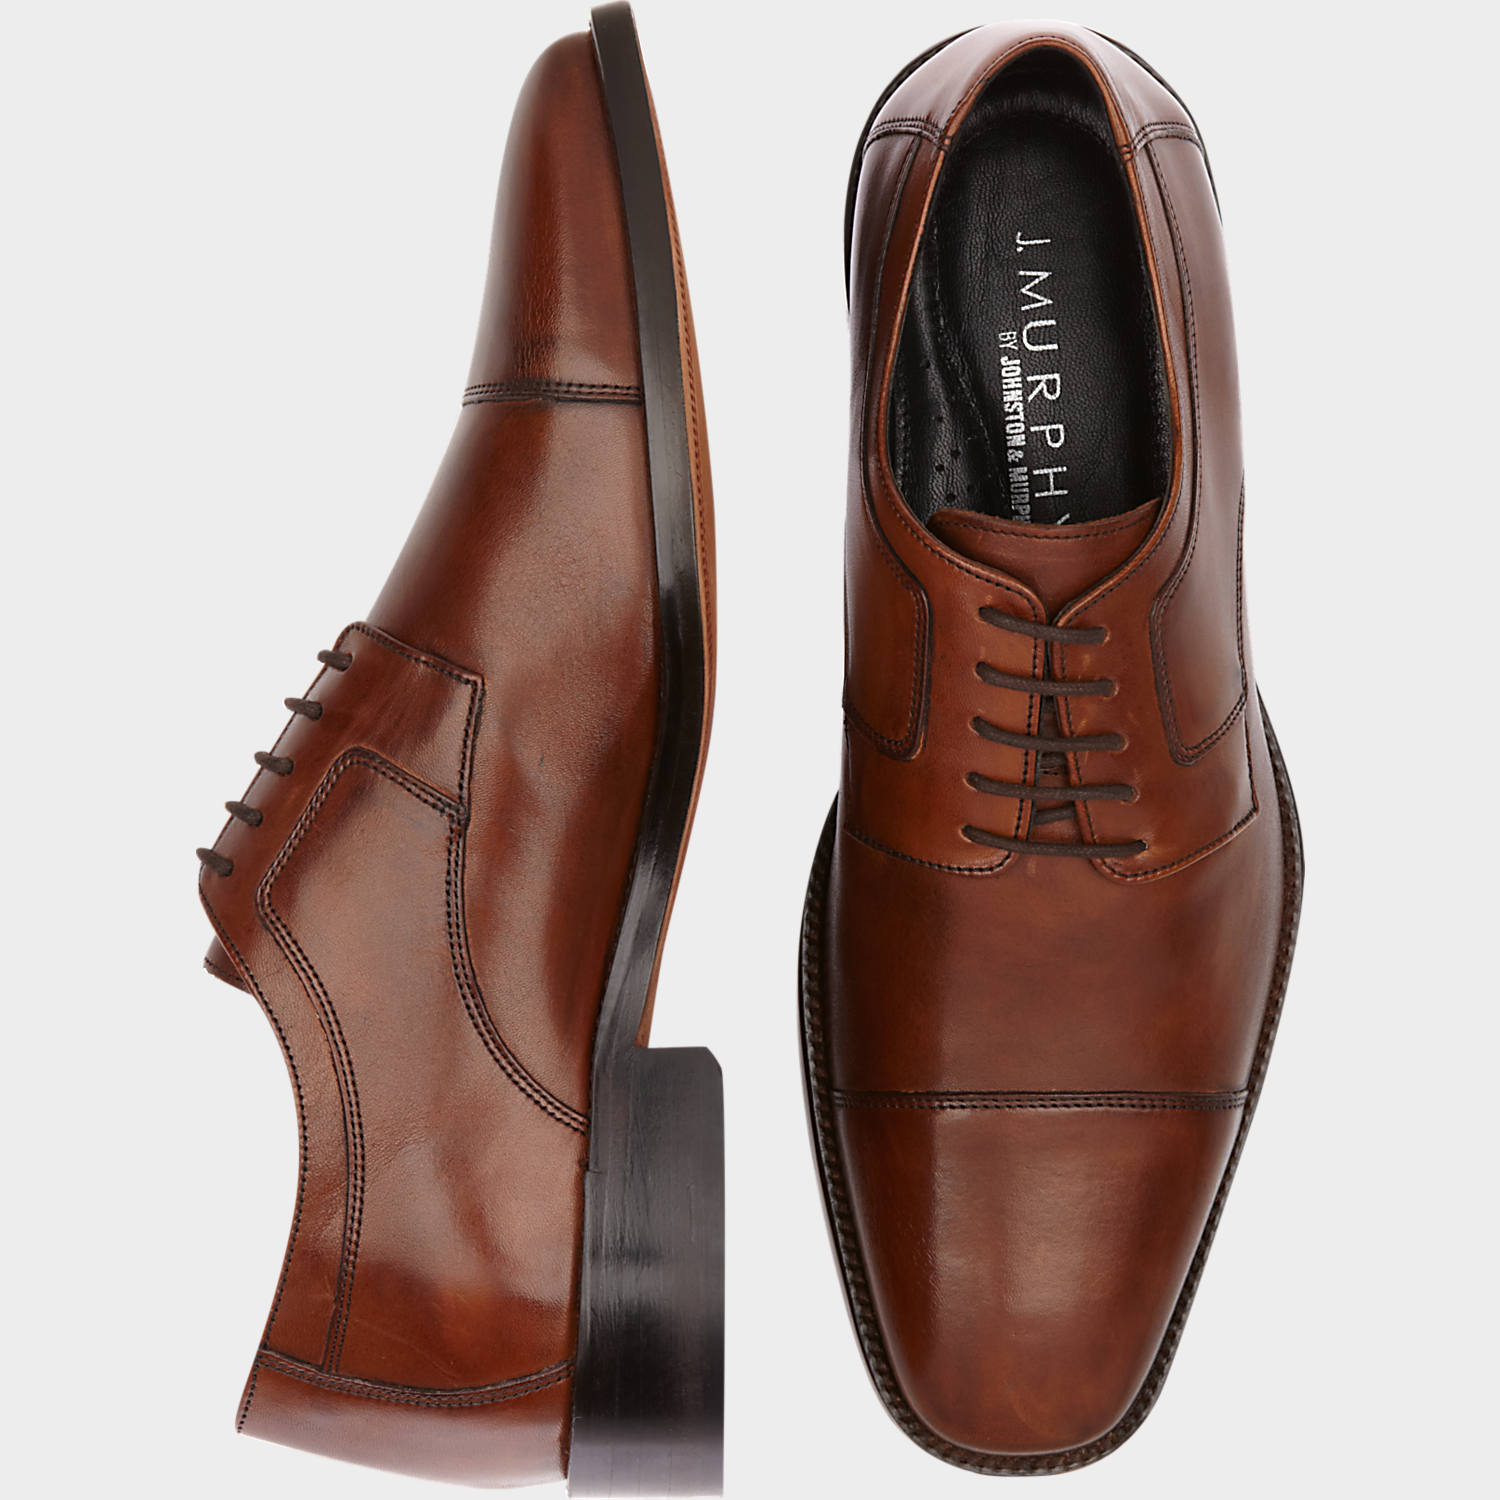 Business Shoes herr klänning skor, skor - j.  murphy av johnston u0026 murphy novick brun keps FEJUALC